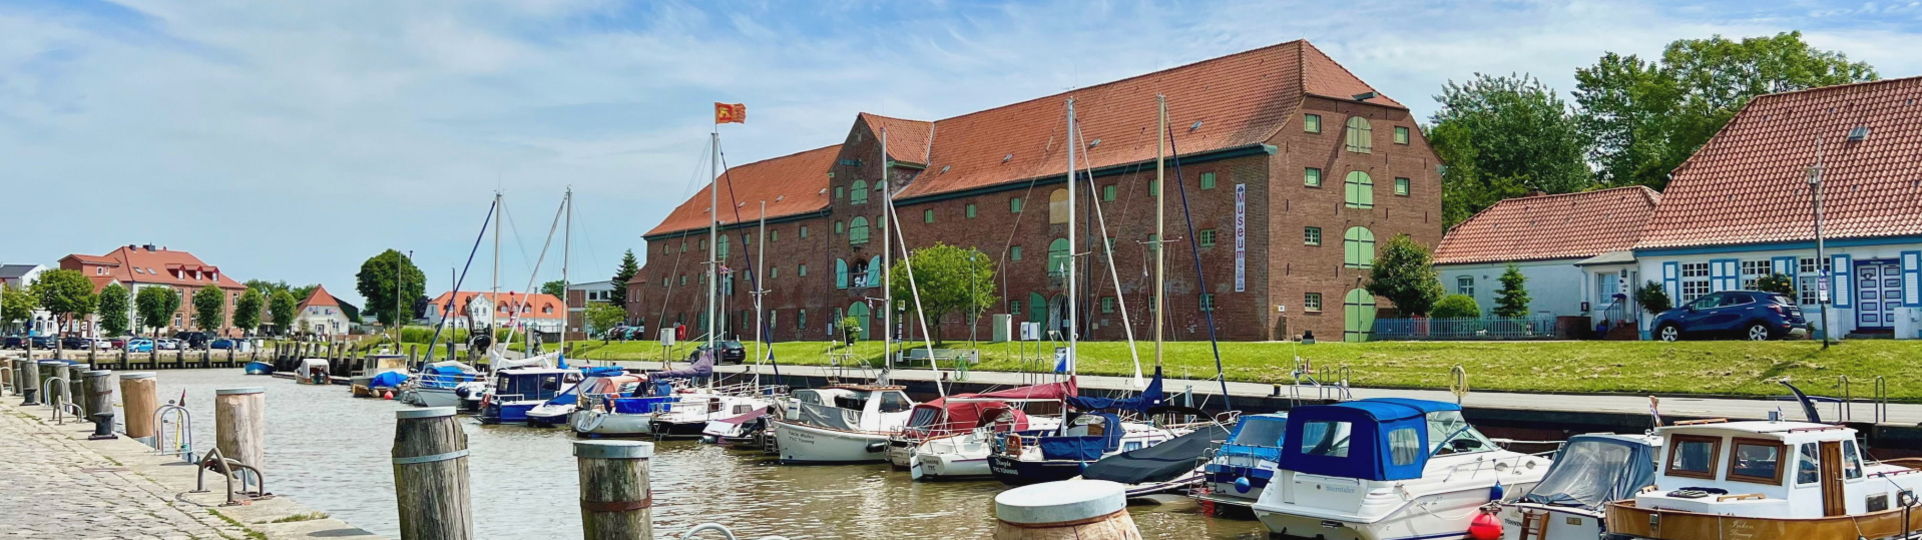 Packhaus und historischer Hafen